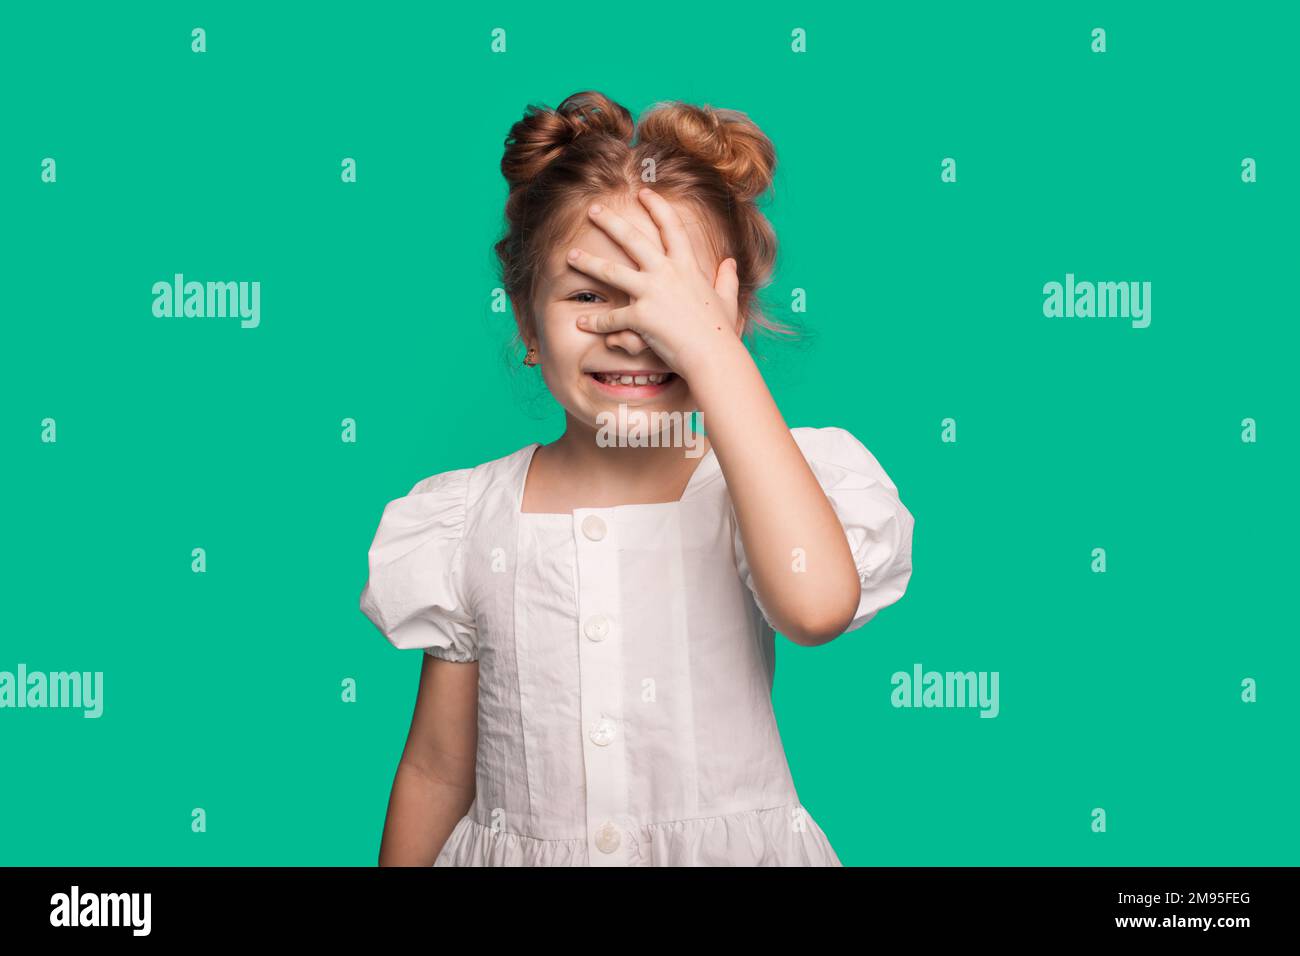 Lächelndes, glückliches Mädchen, das Hand auf Gesicht legt, Gesichtsschmerz isoliert auf einem grünen, hellen Studioporträt im Hintergrund. Stockfoto